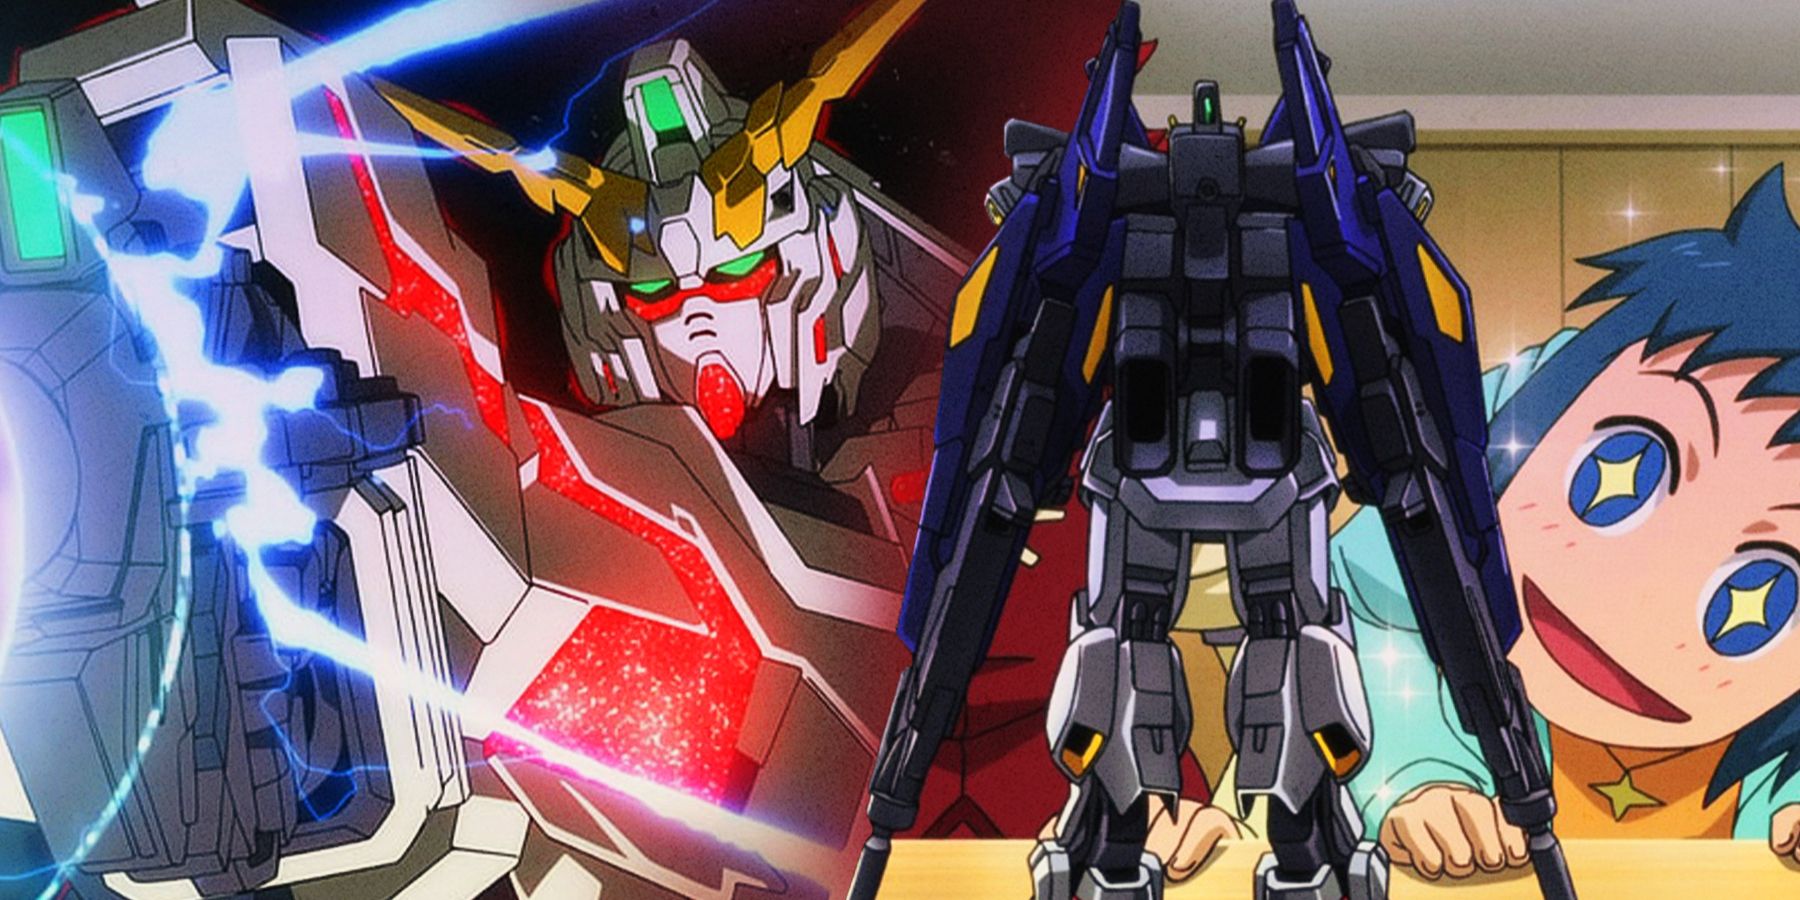 List of Gundam Series to Watch in Order  Factsnet